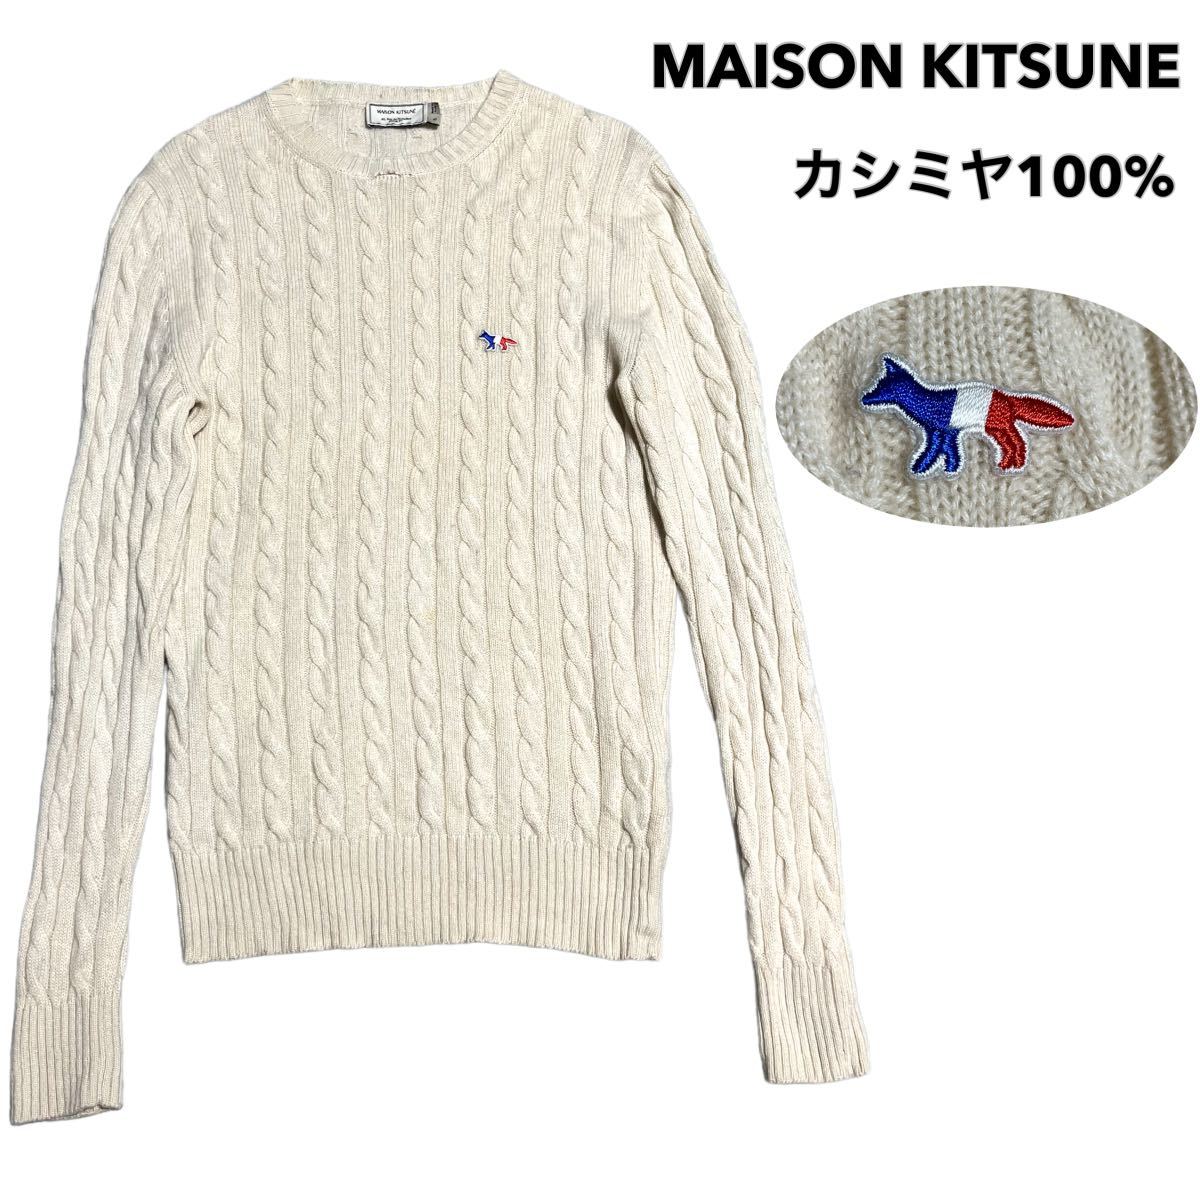 イタリア製 MAISON KITSUNE メゾンキツネ カシミヤ100% ケーブルニット セーター メンズ